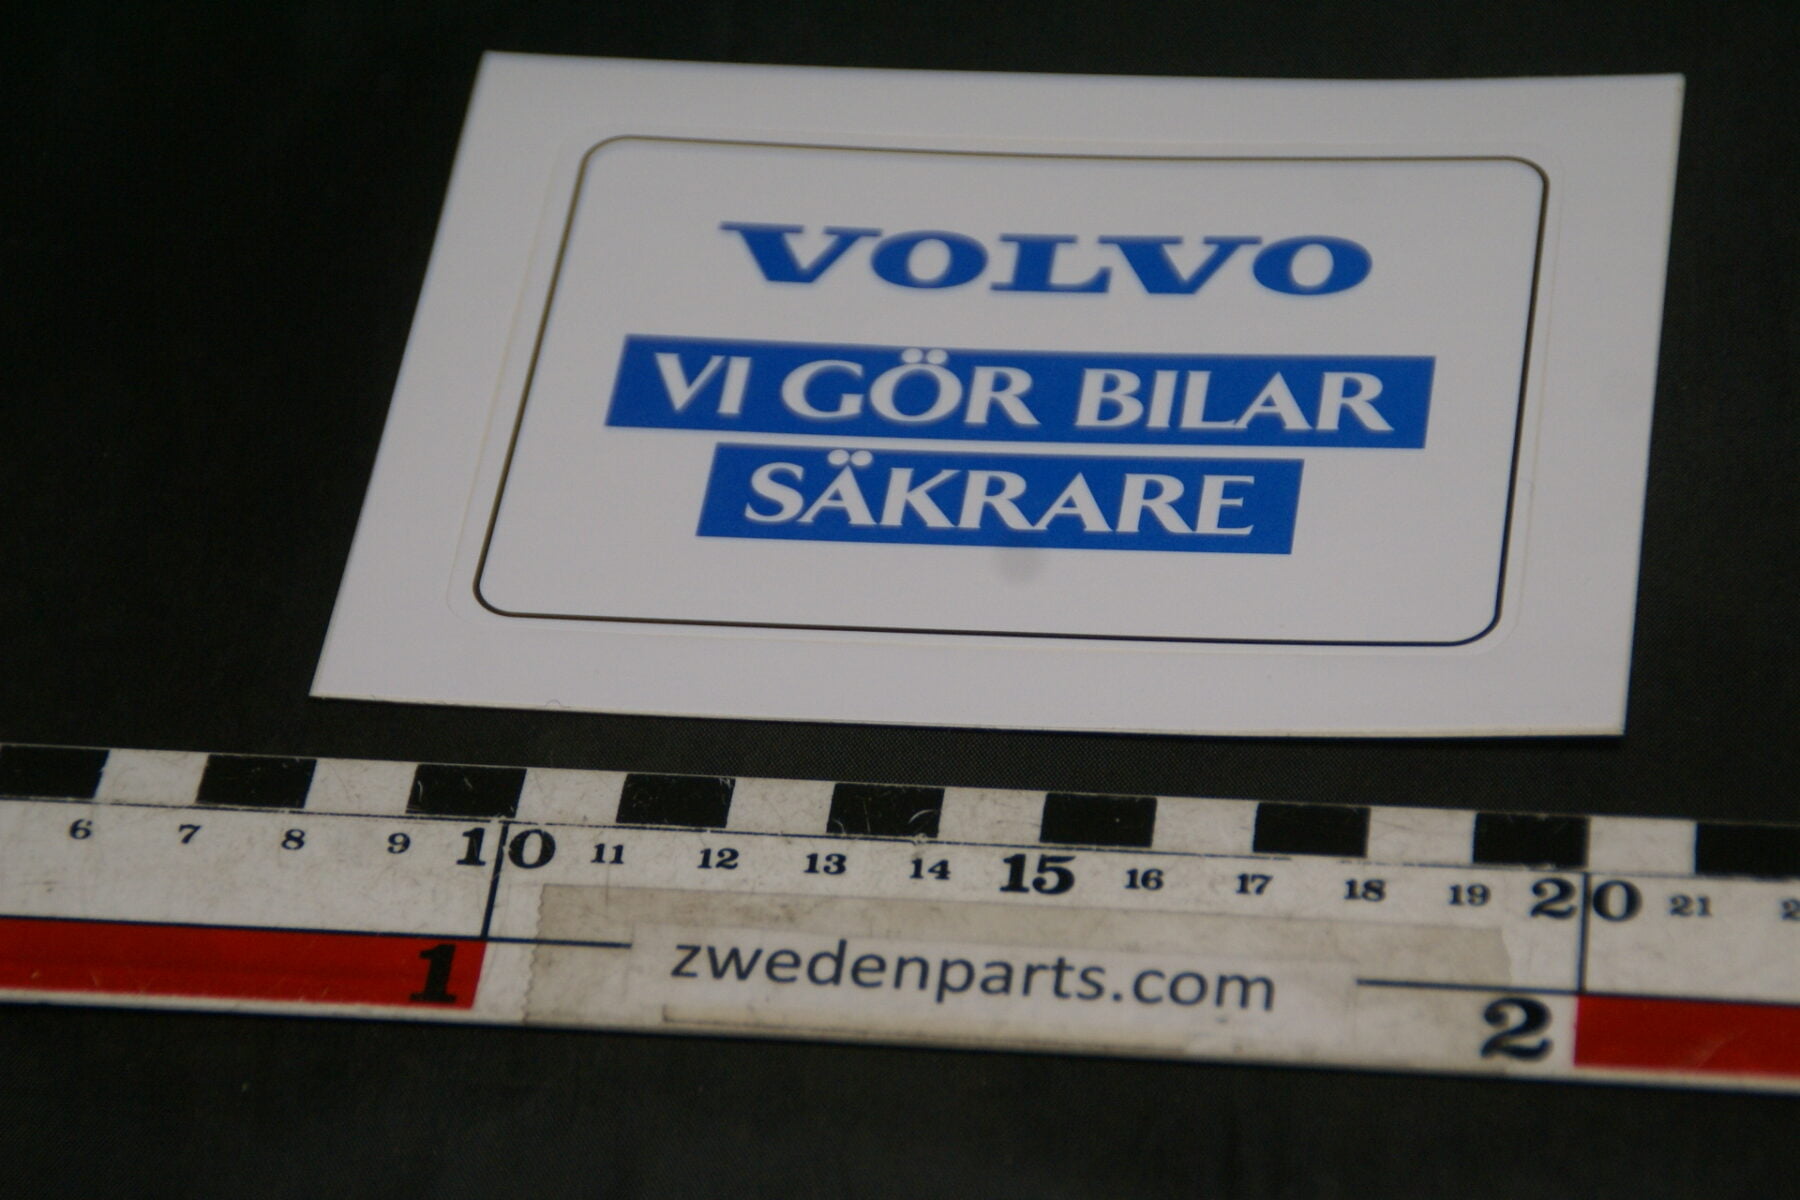 DSC02562 ca 1999 originele sticker Volvo vi gör bilar säkare NOS-4d80058c